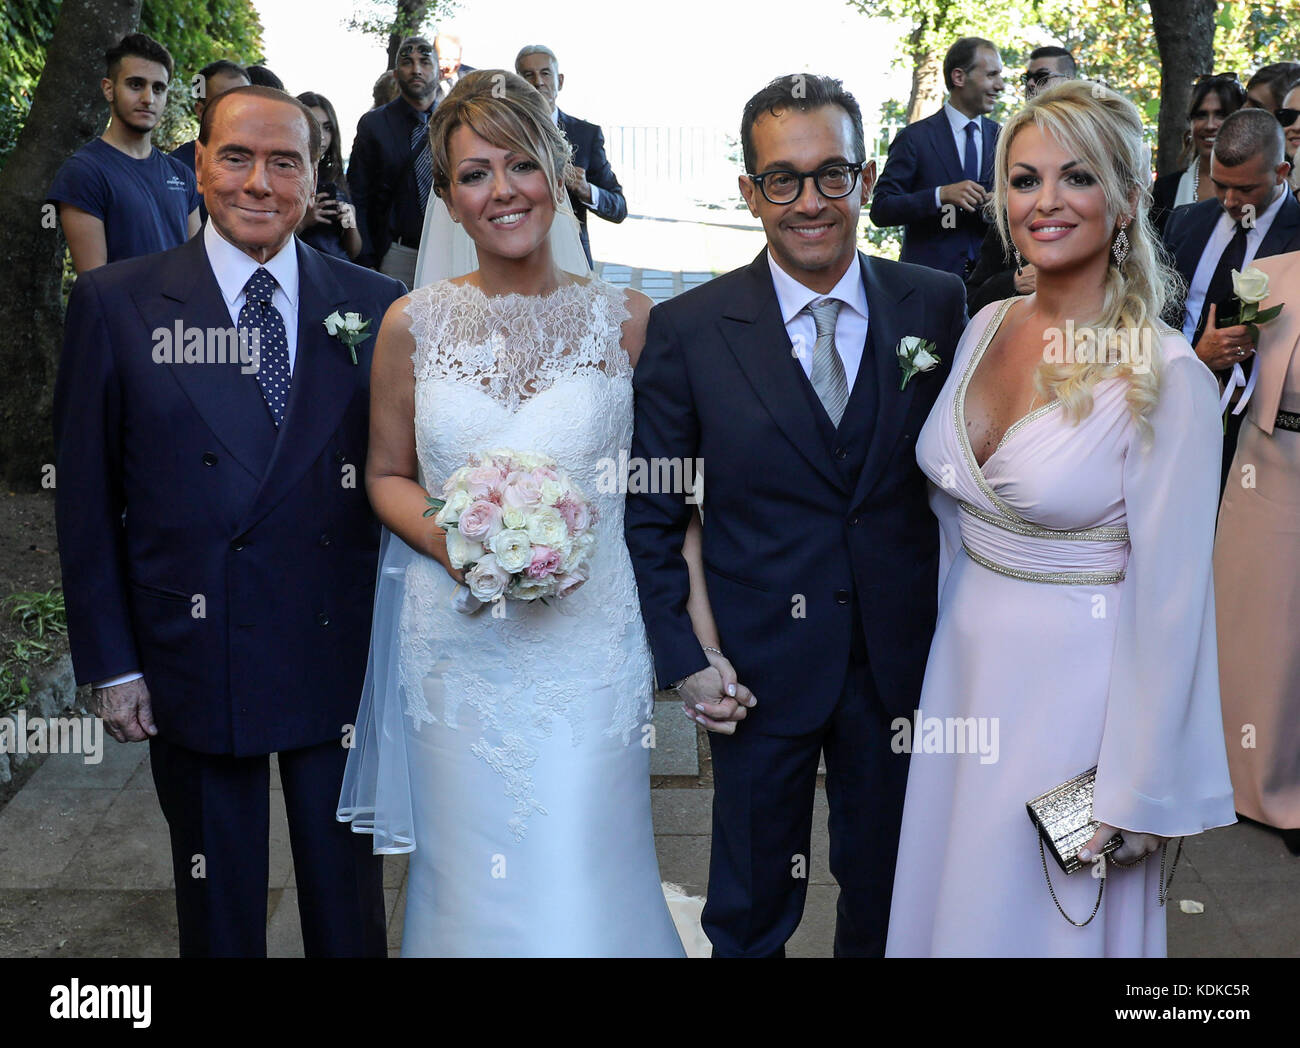 Silvio Berlusconi e francesca pascale a Ravello, in occasione delle nozze di sua sorella Marianna Pascale 13/10/2017, Ravello, Italia Foto Stock